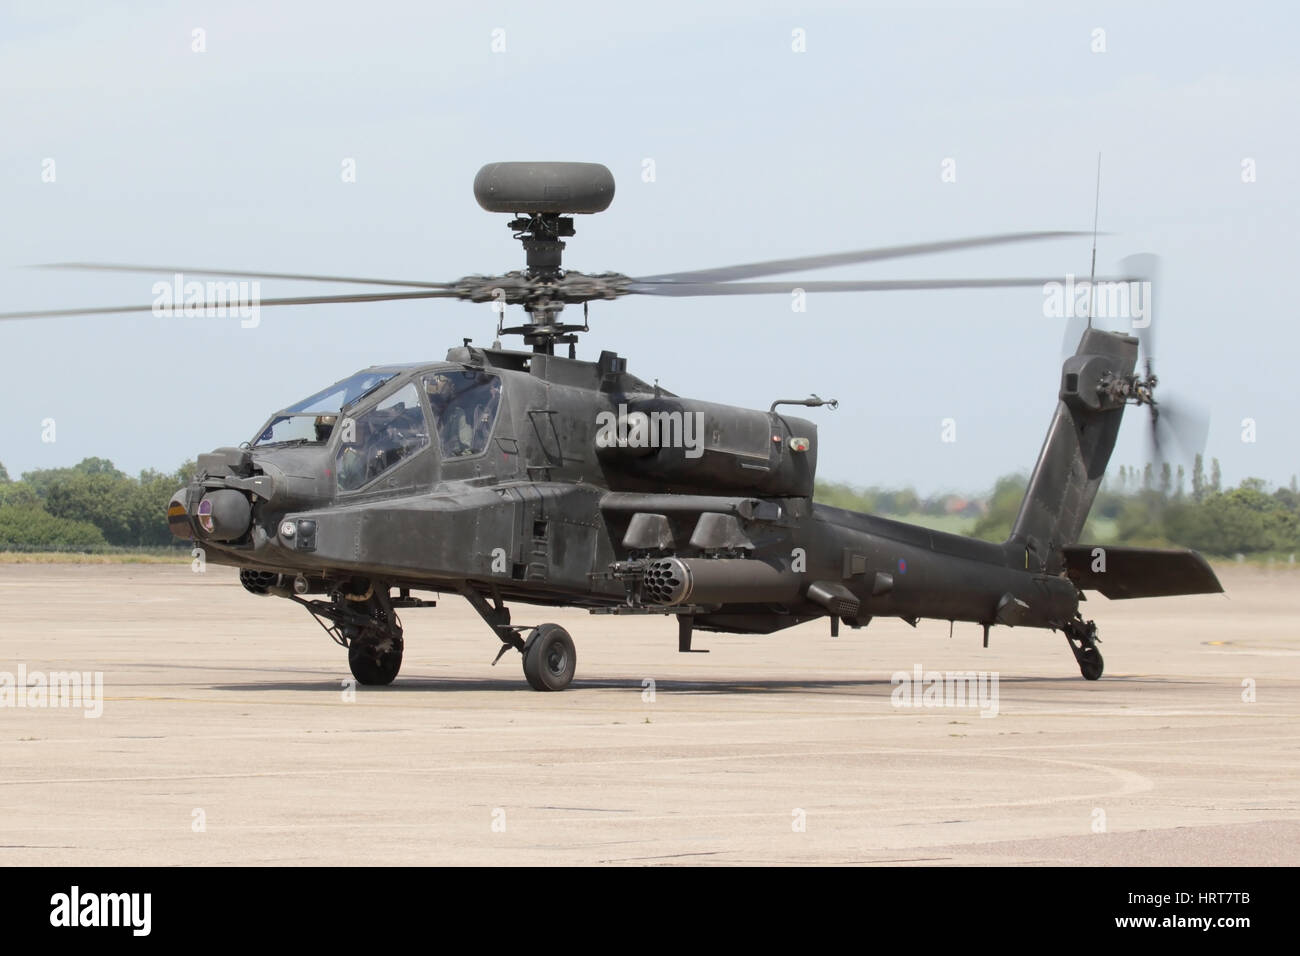 Ejército del Aire solo display de rodadura Apache antes de una manifestación dada a los medios de comunicación en Wattisham. Foto de stock